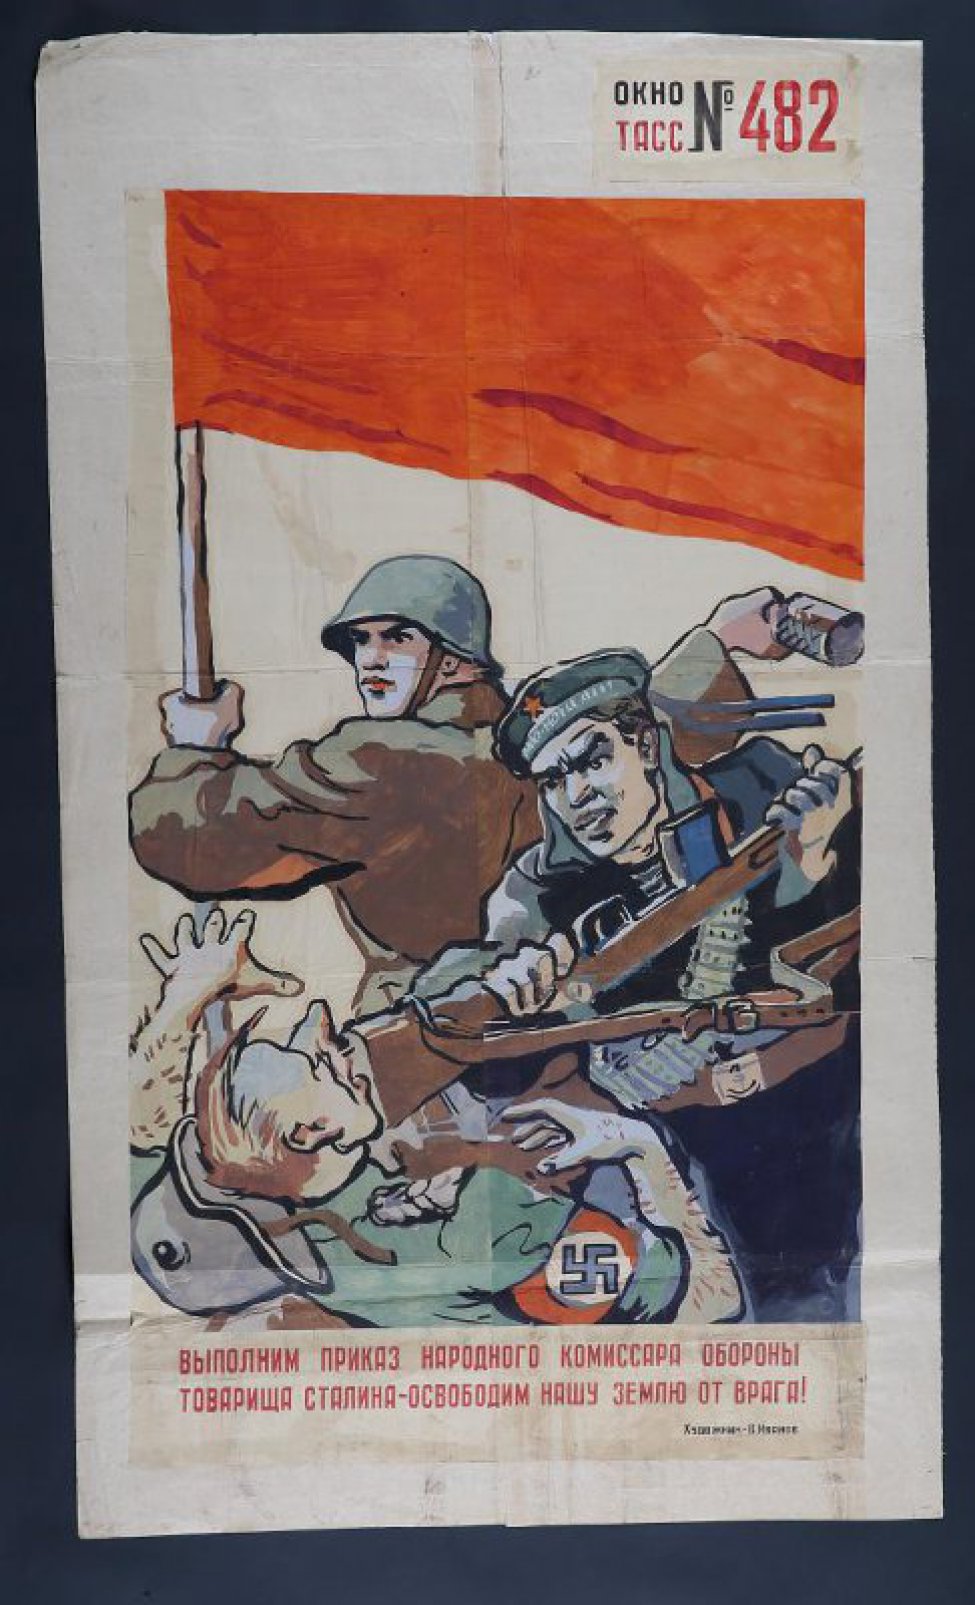 Изображено: под красным знаменем советский воин бросает гранату, моряк бьет прикладом фашиста по лицу, текст: " Выполним приказ народного комиссара Обороны товарища Сталина- освободим нашу землю от врага."